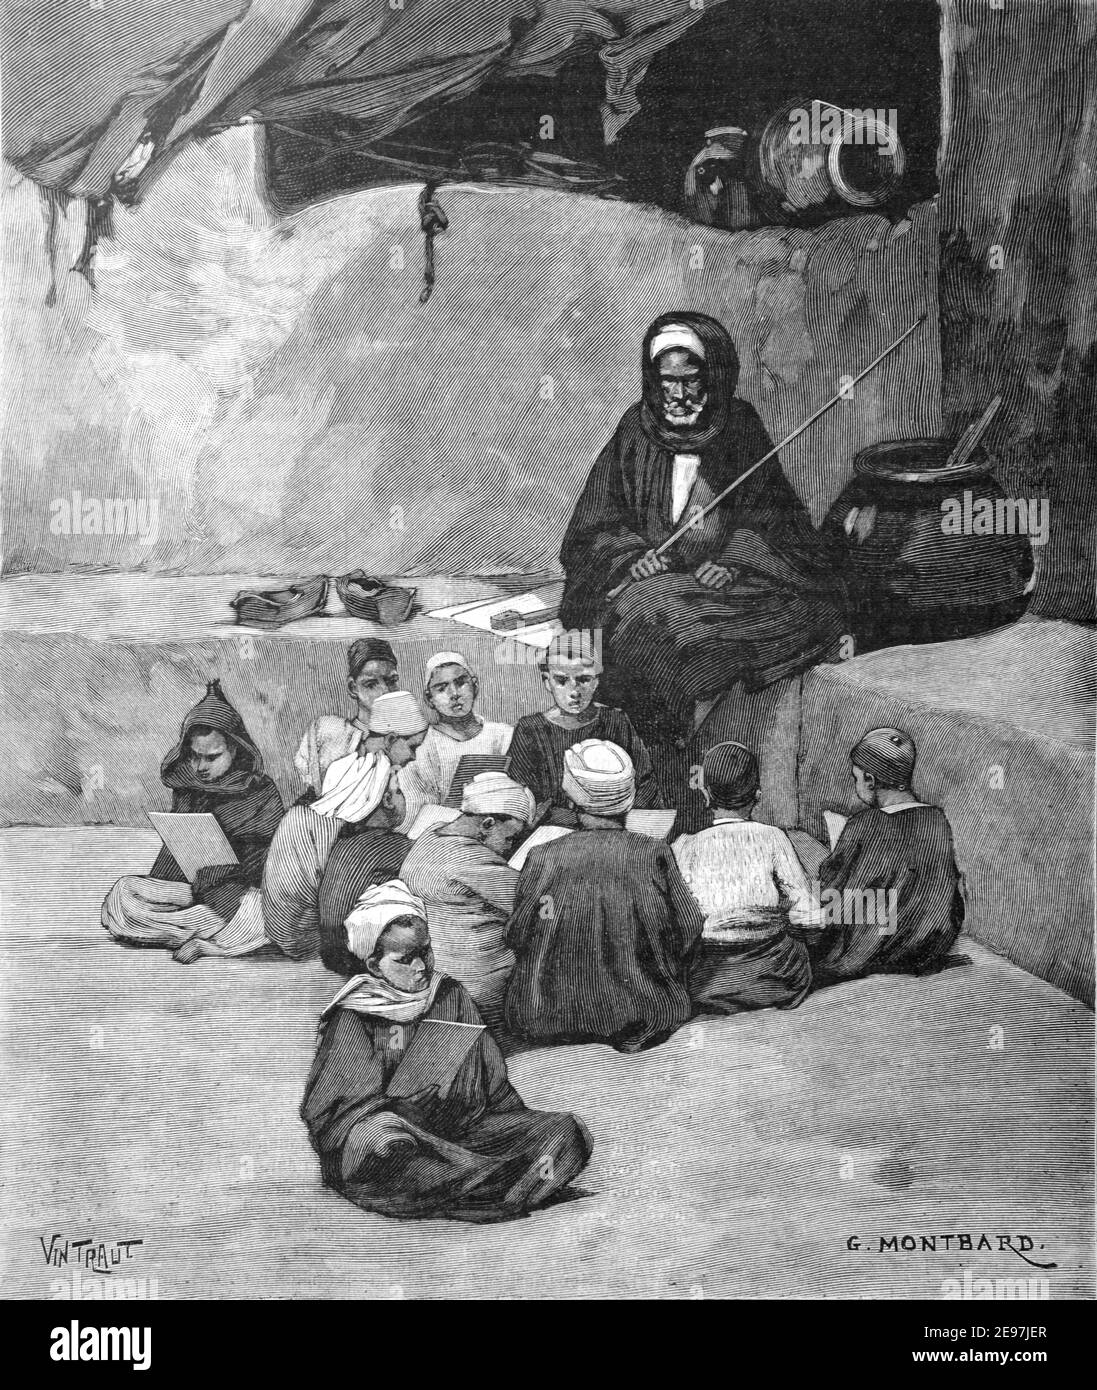 École coranique ou école islamique avec des élèves marocains ou Ecoles & Imam ou enseignant Oujda Maroc 1900 Vintage Illustration Ou gravure Banque D'Images